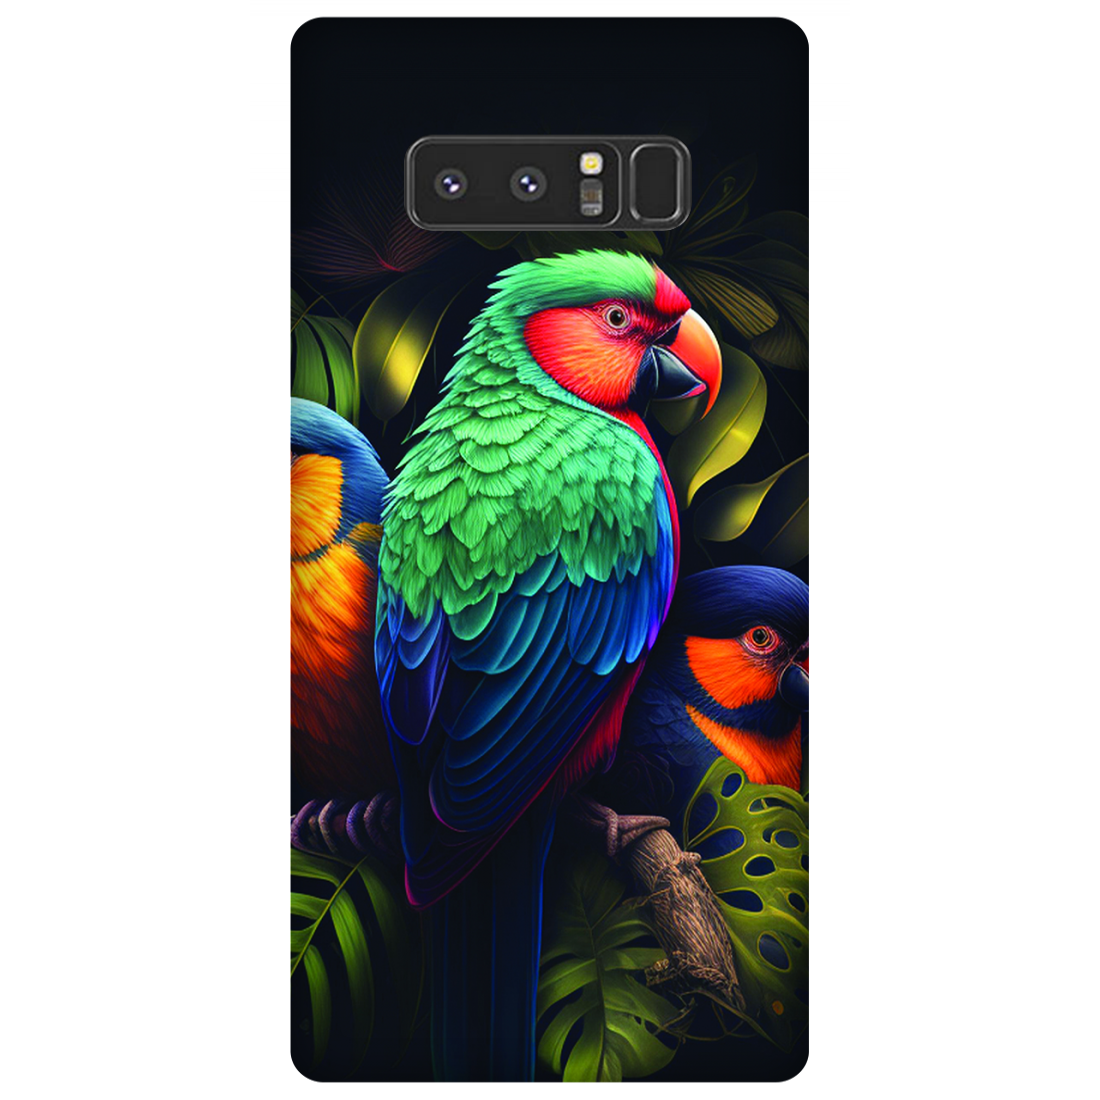 Vibrant Tropical Birds Case Samsung Galaxy Note 8